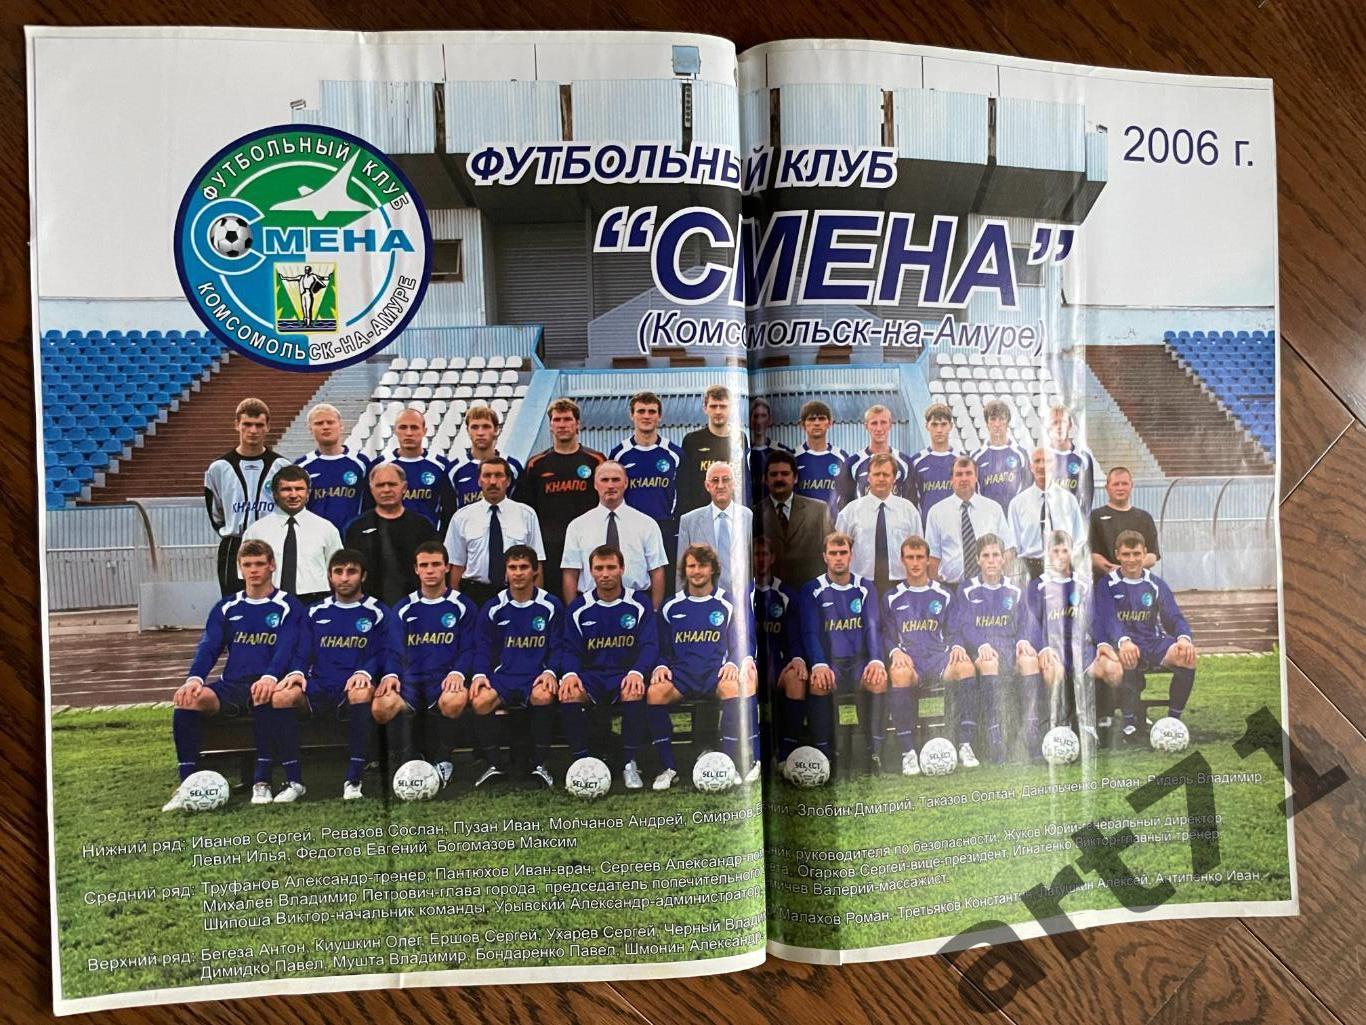 Смена Комсомольск-на-Амуре 2006 плакат